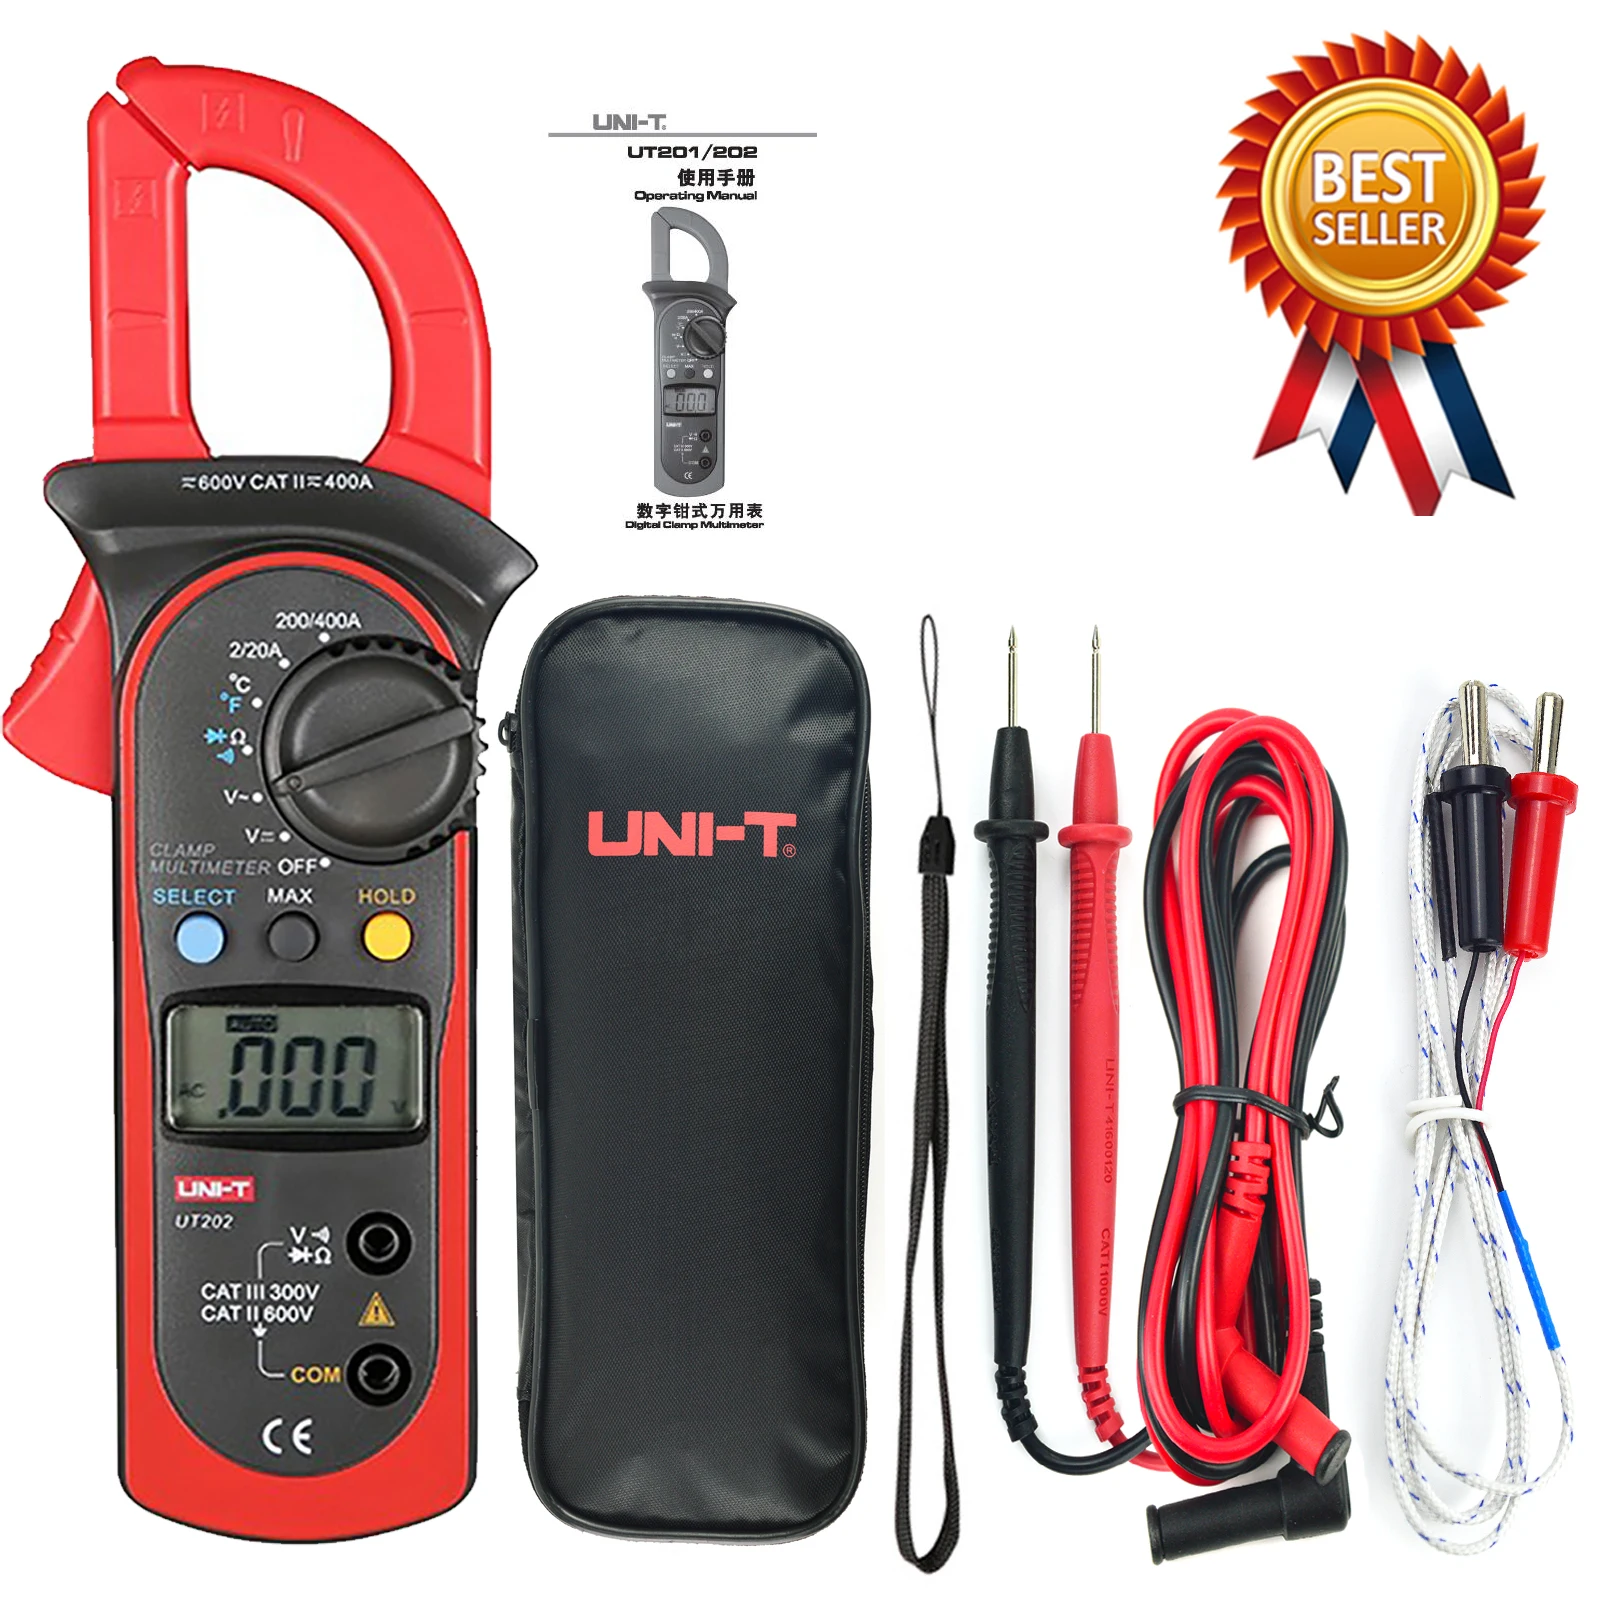 

UNI-T UT202 Auto Range Digital Clamp Meter Multimeter Voltmeter Ammeter DC AC Voltage Current Resistance Temperature Tester